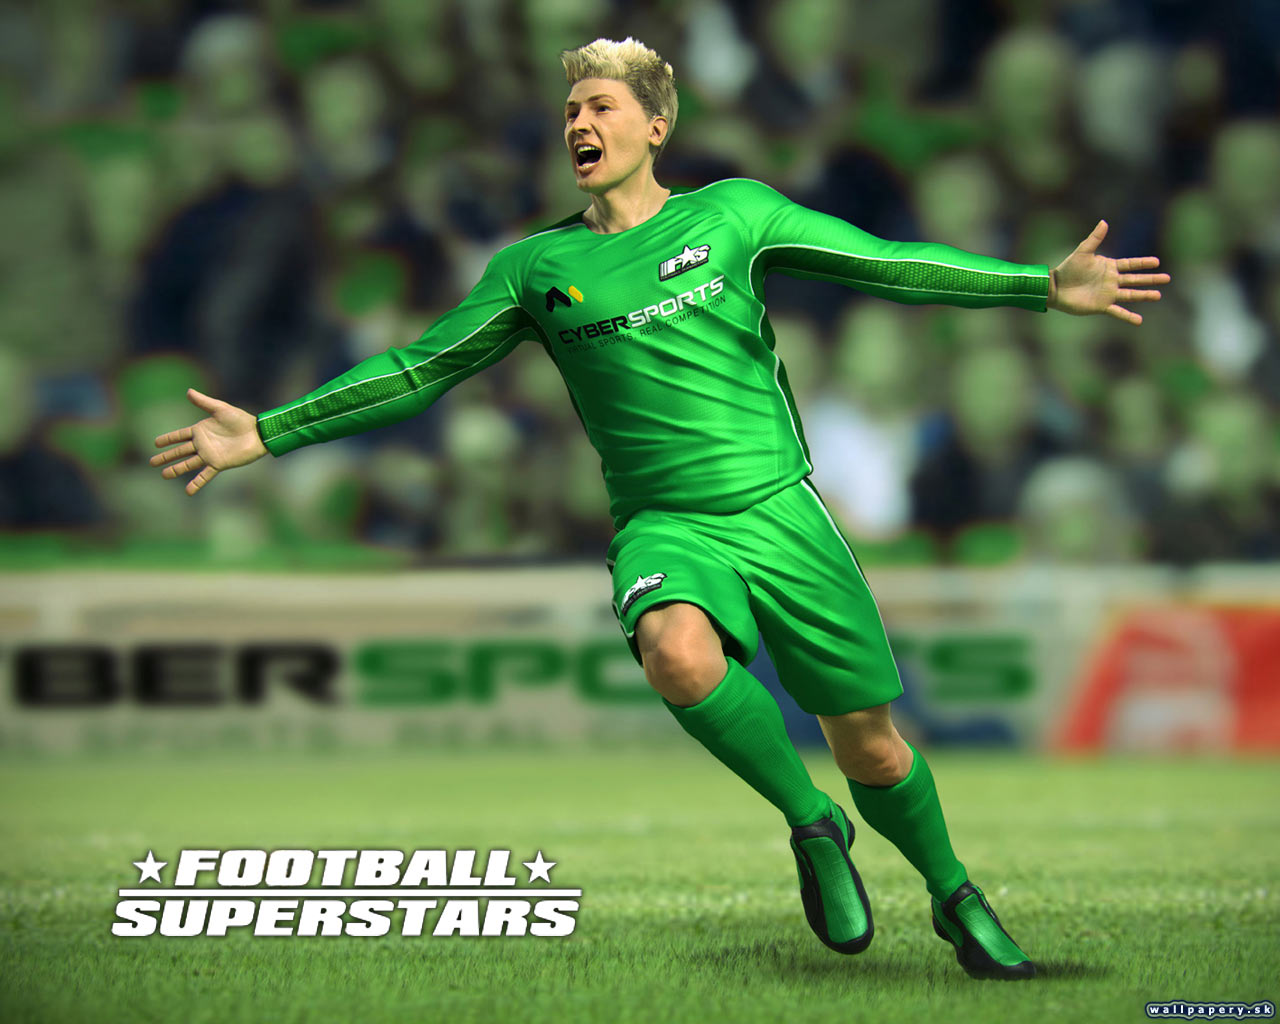 Football SuperStars - wallpaper 4